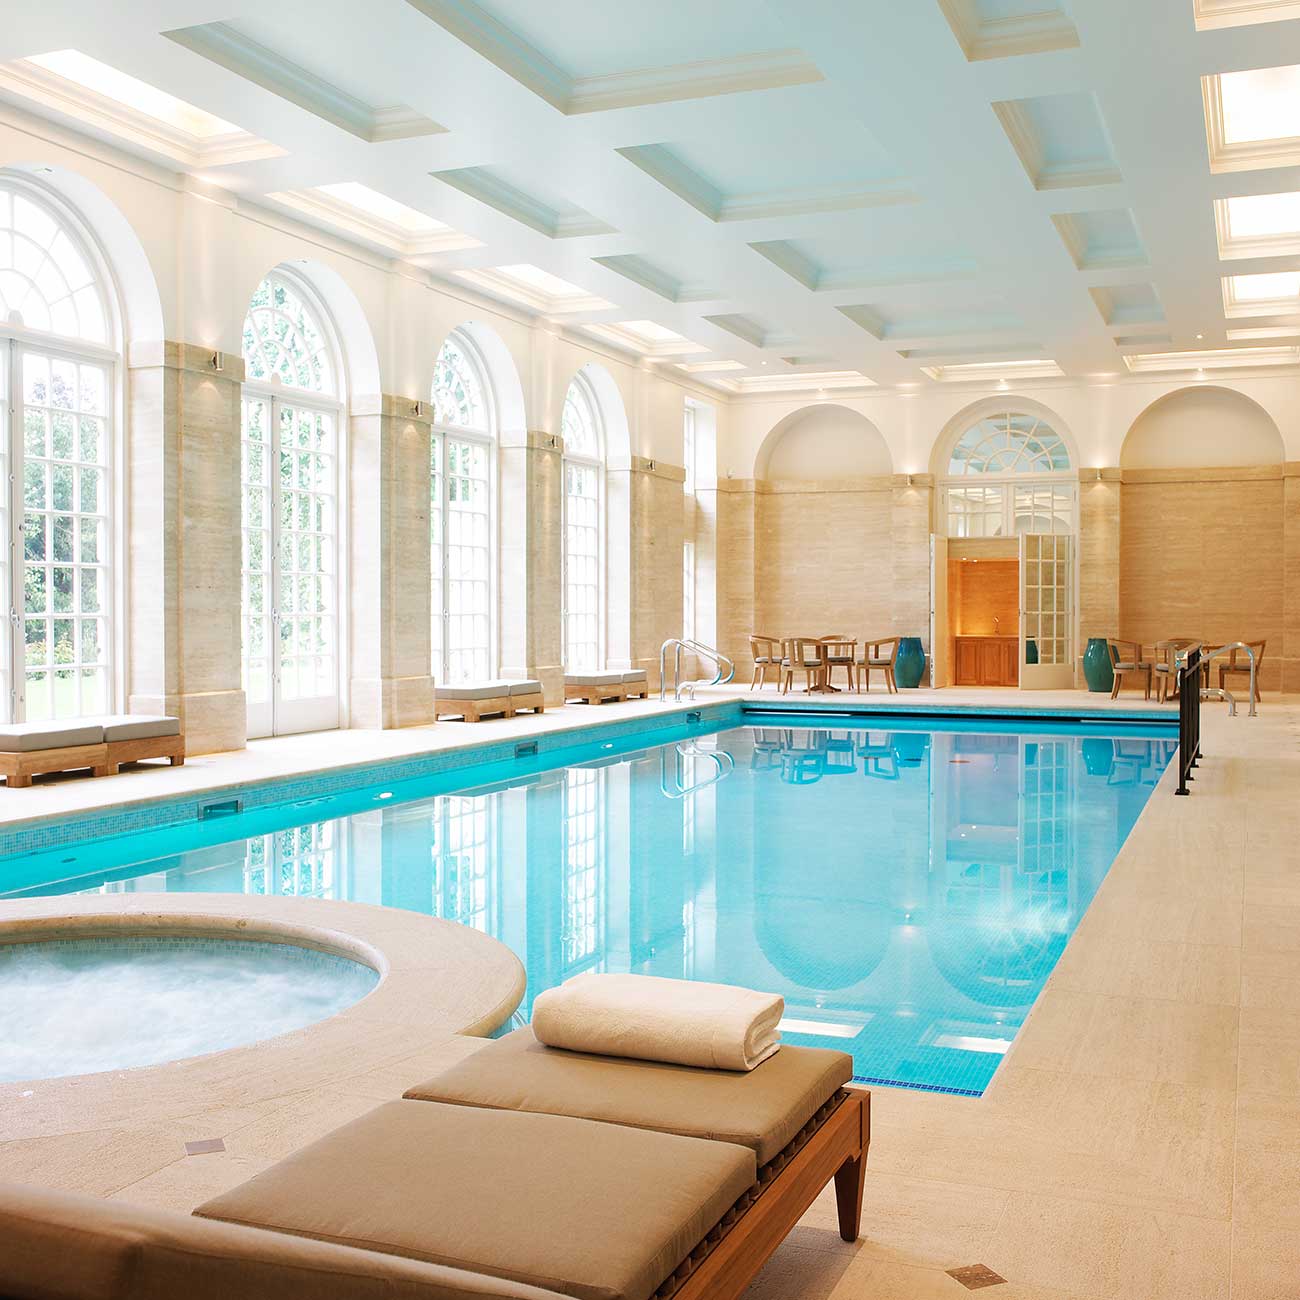 Swimming pool - Leisure design | Interior design